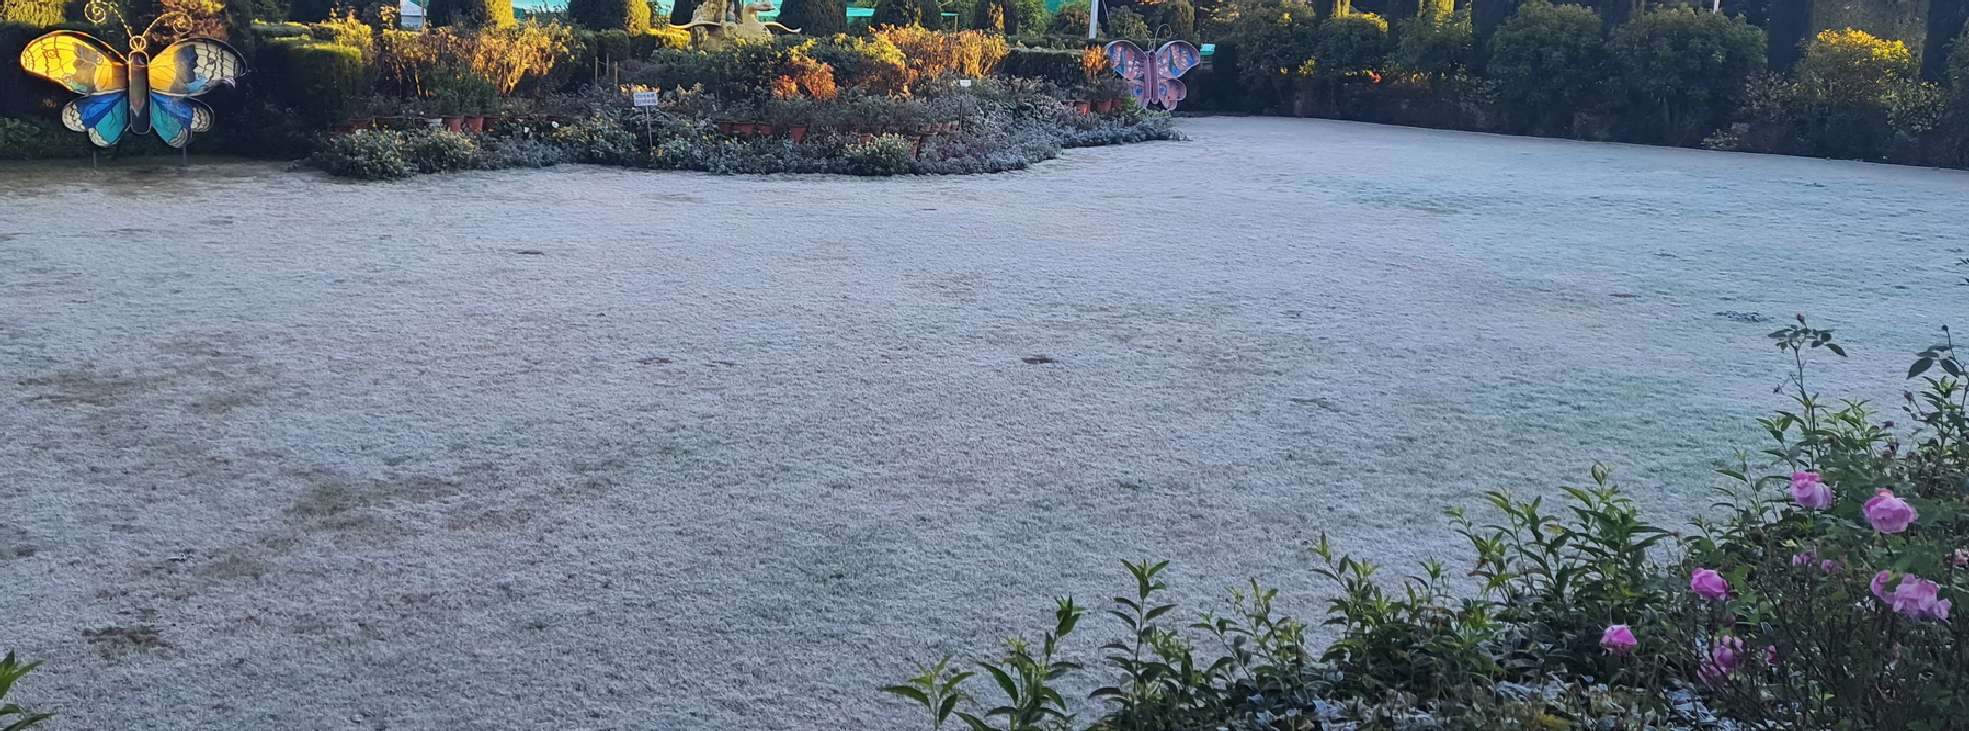 PHOTO STORY: राजस्थान का हिल स्टेशन शीतलहर की चपेट में, चहुंओर बिछी बर्फ की
चादर, देखें तस्वीरें…